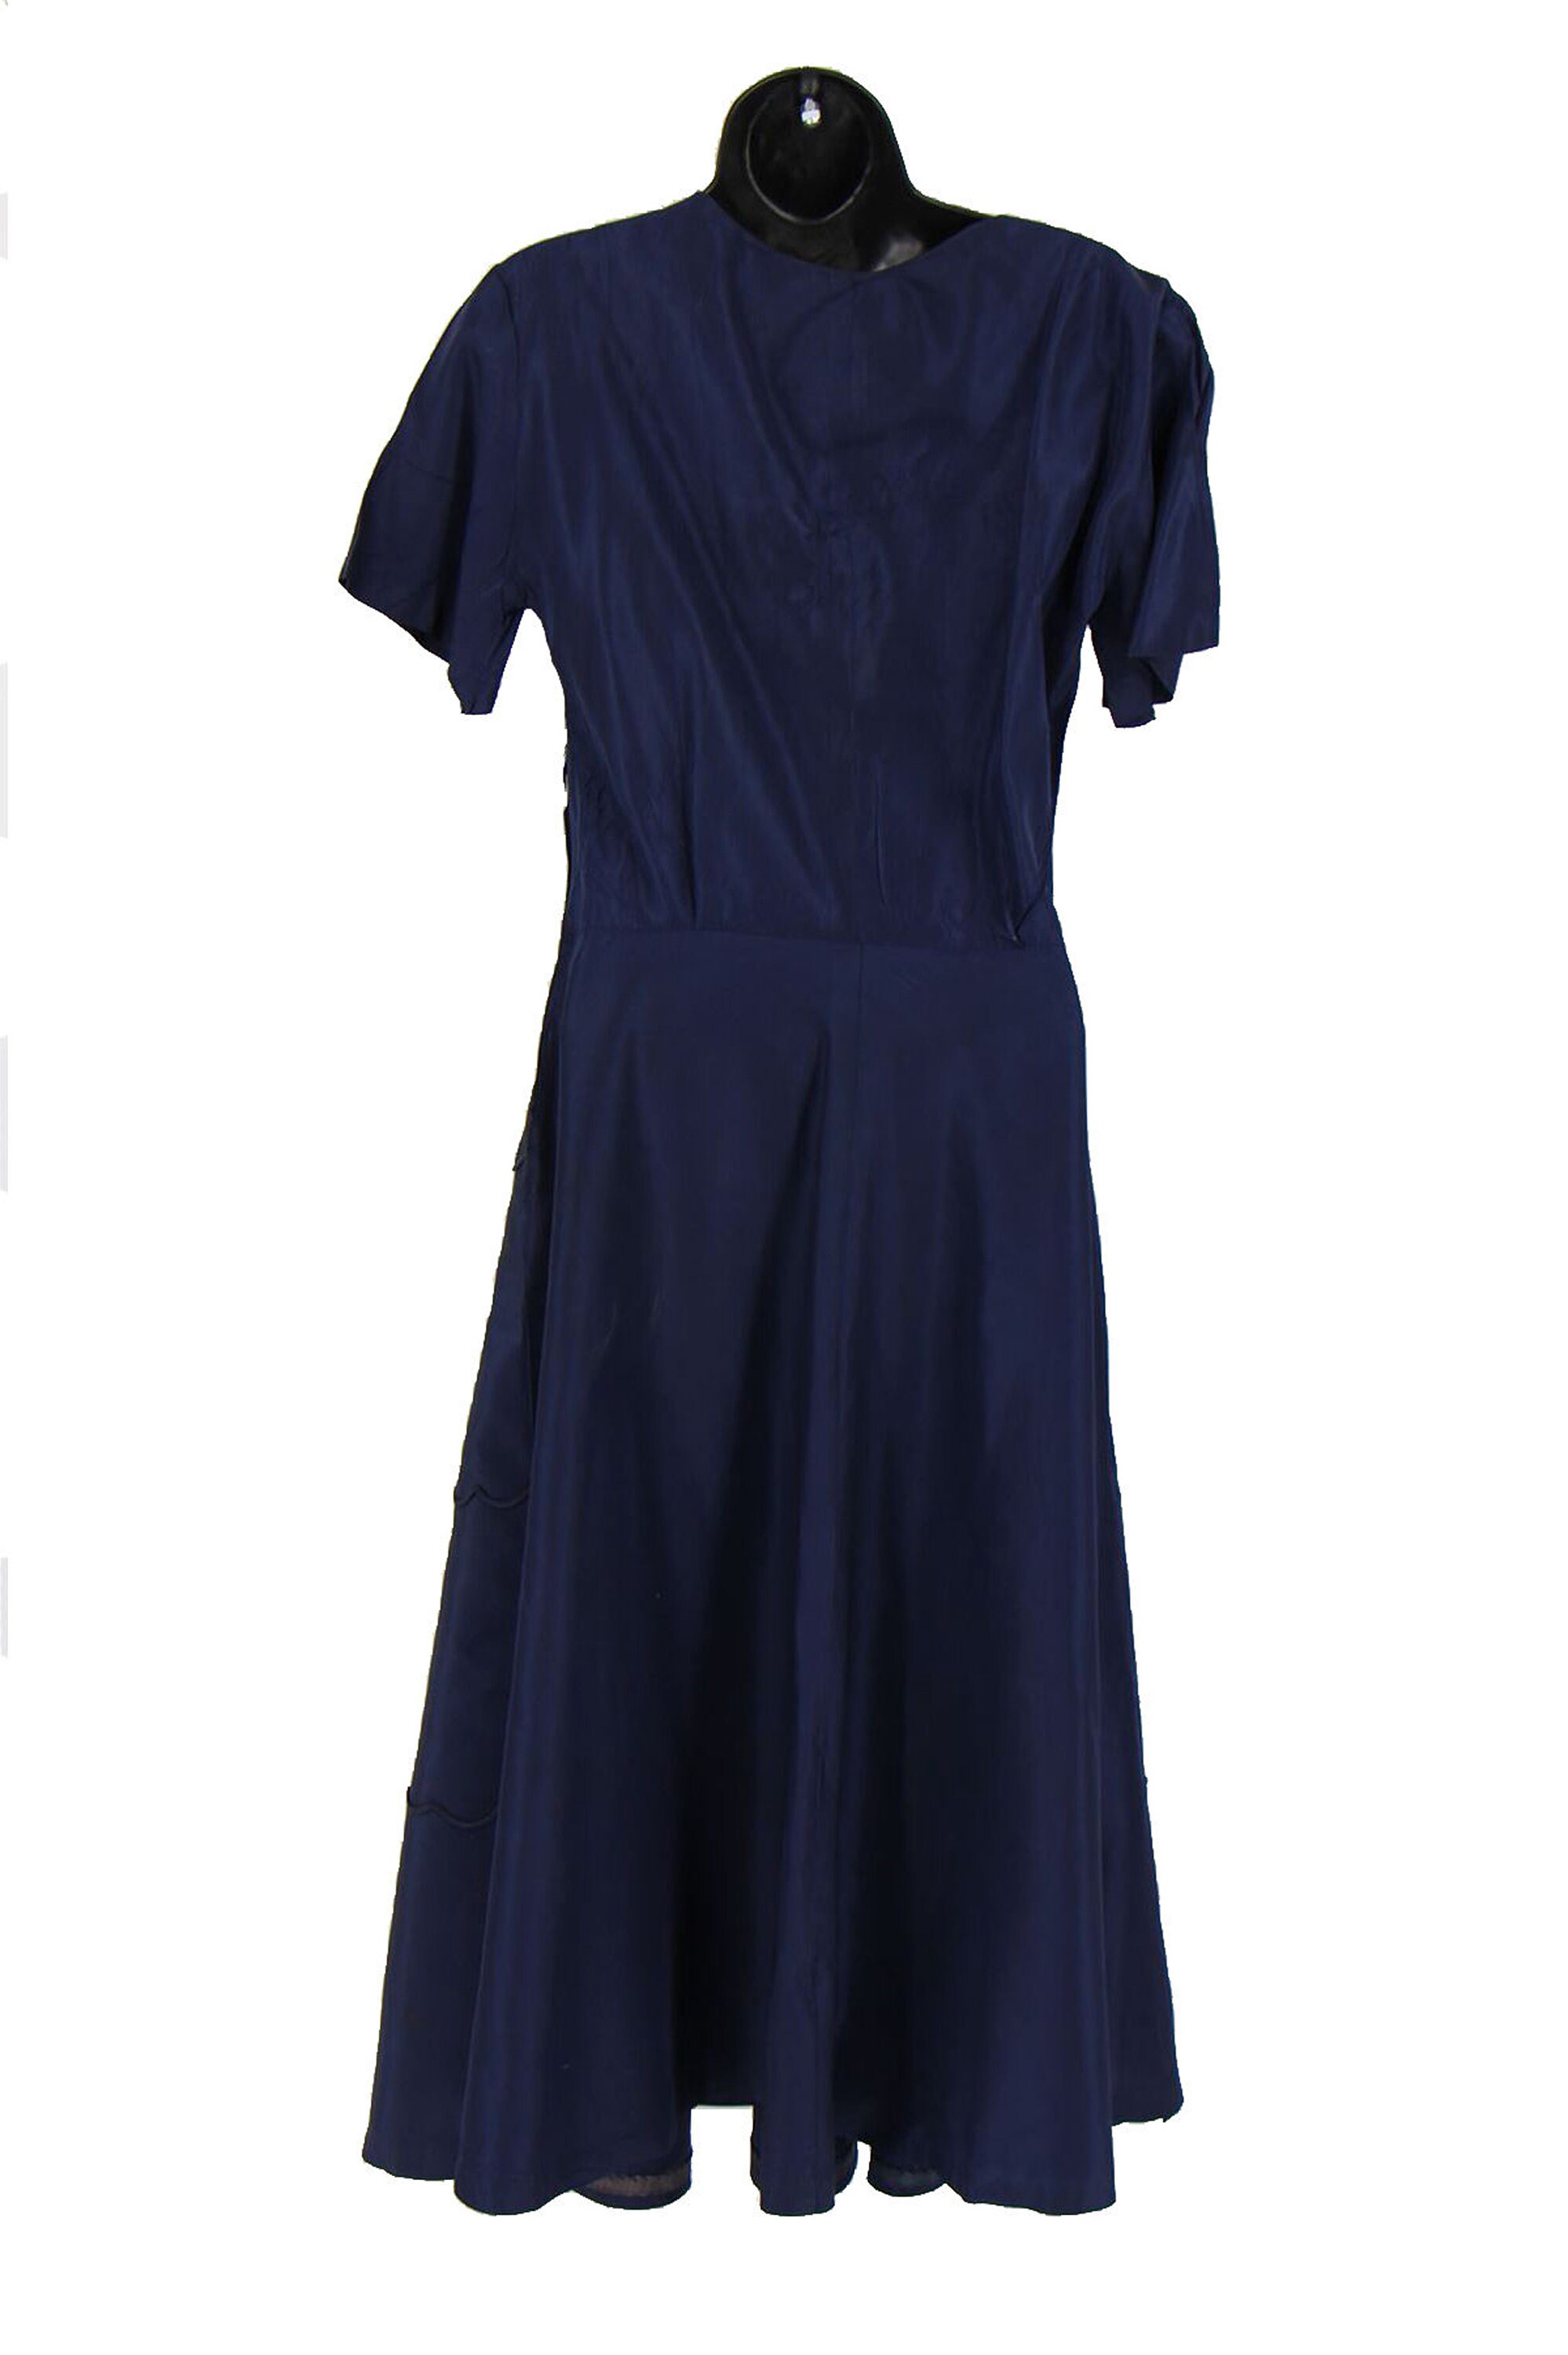 Vintage 1940s Blue Floral Piping Detail Dress UK 10 - Etsy UK